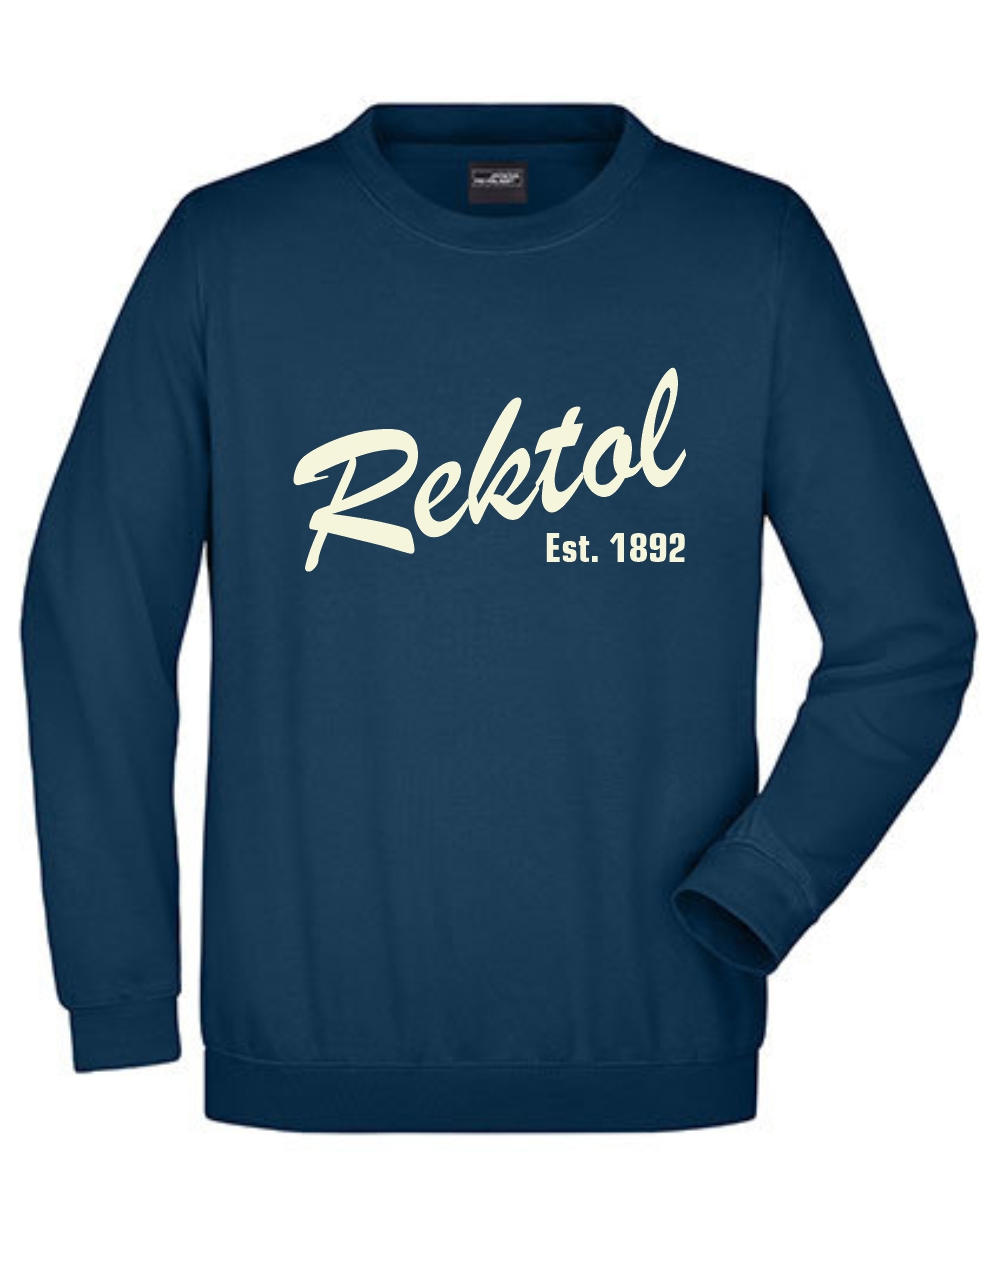 REKTOL Retro Sweatshirt